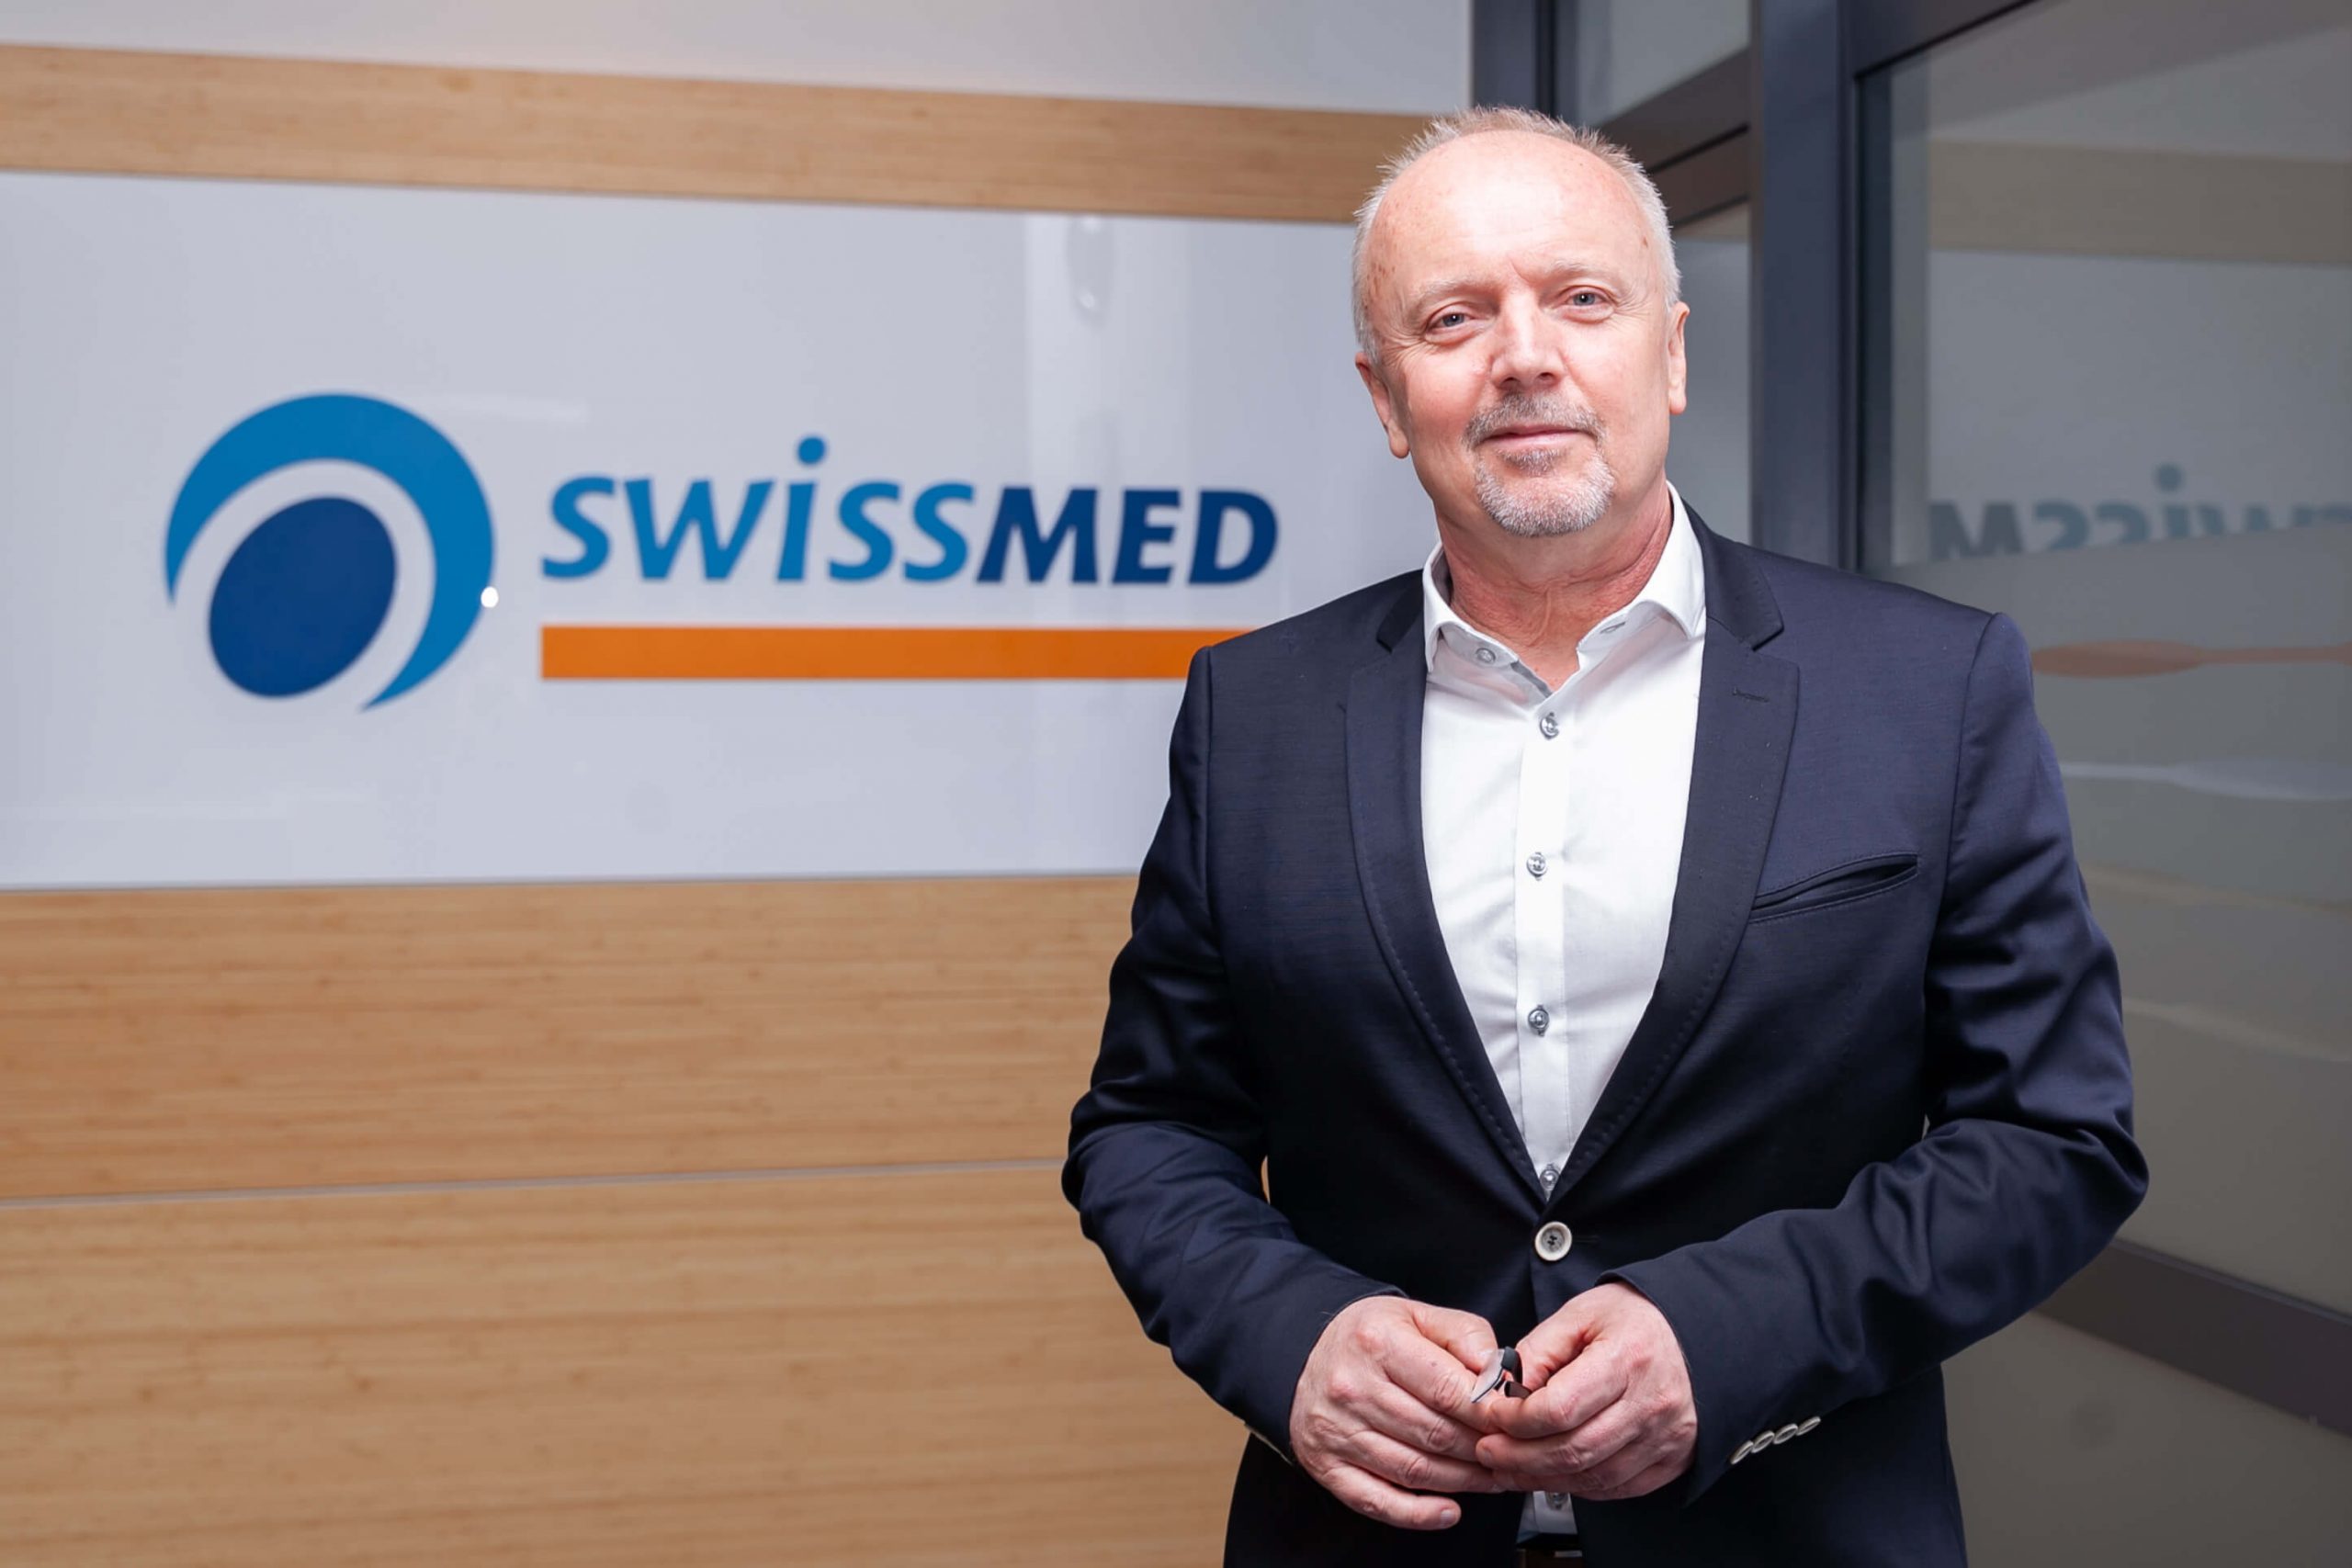 Włodzimierz Piankowski, director of the Swissmed Hospital